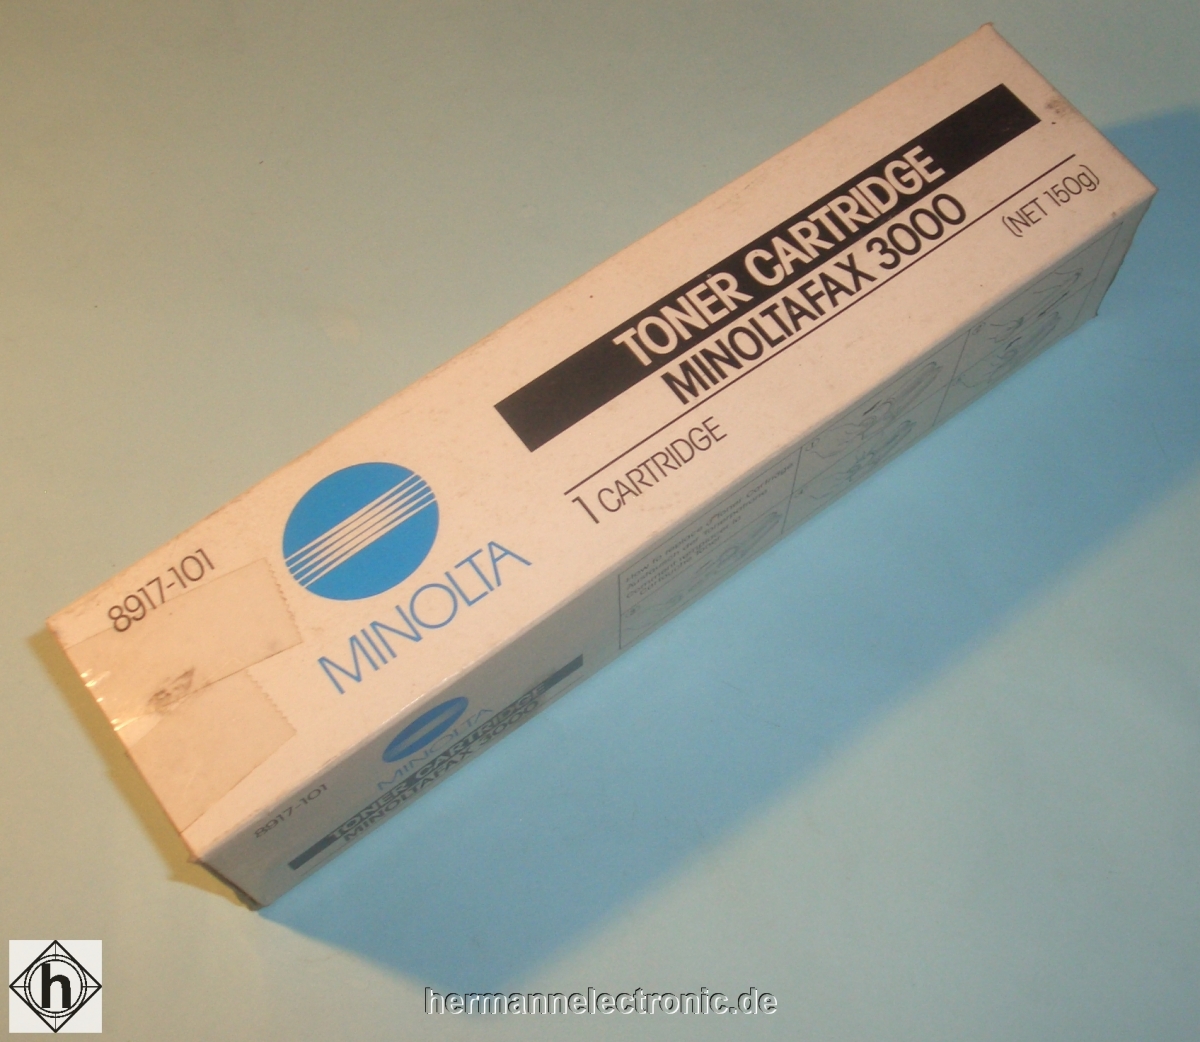 MinoltaToner cartridge, black 8917-101 for MINOLTAFAX 3000